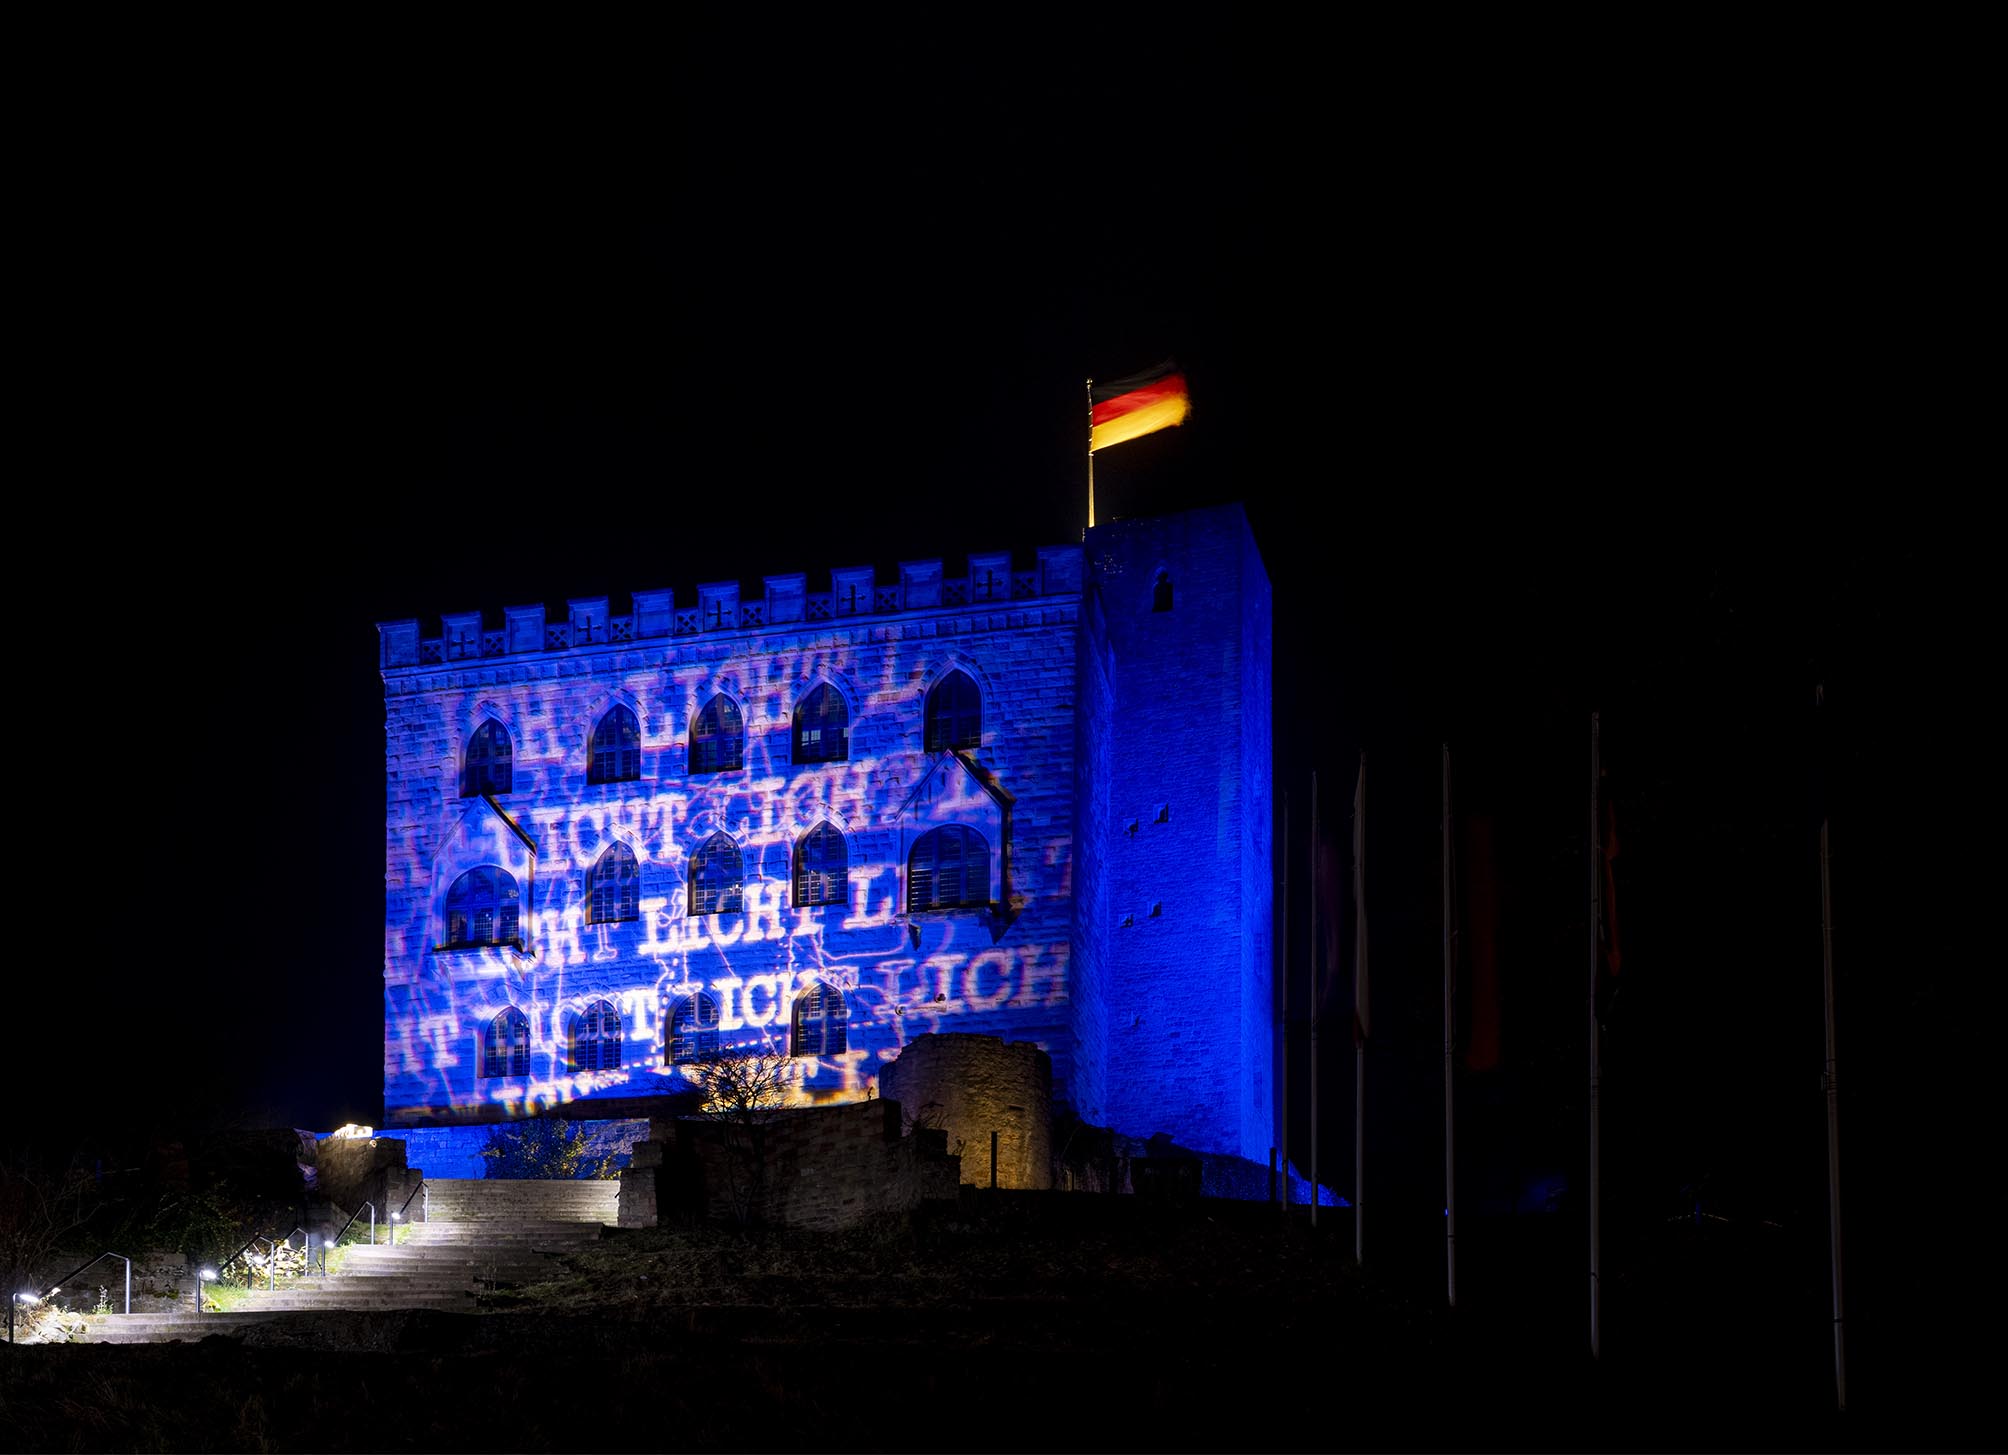 Hambacher Schloss bei Nacht mit blauer Beleuchtung, in der das Wort Licht zu lesen ist